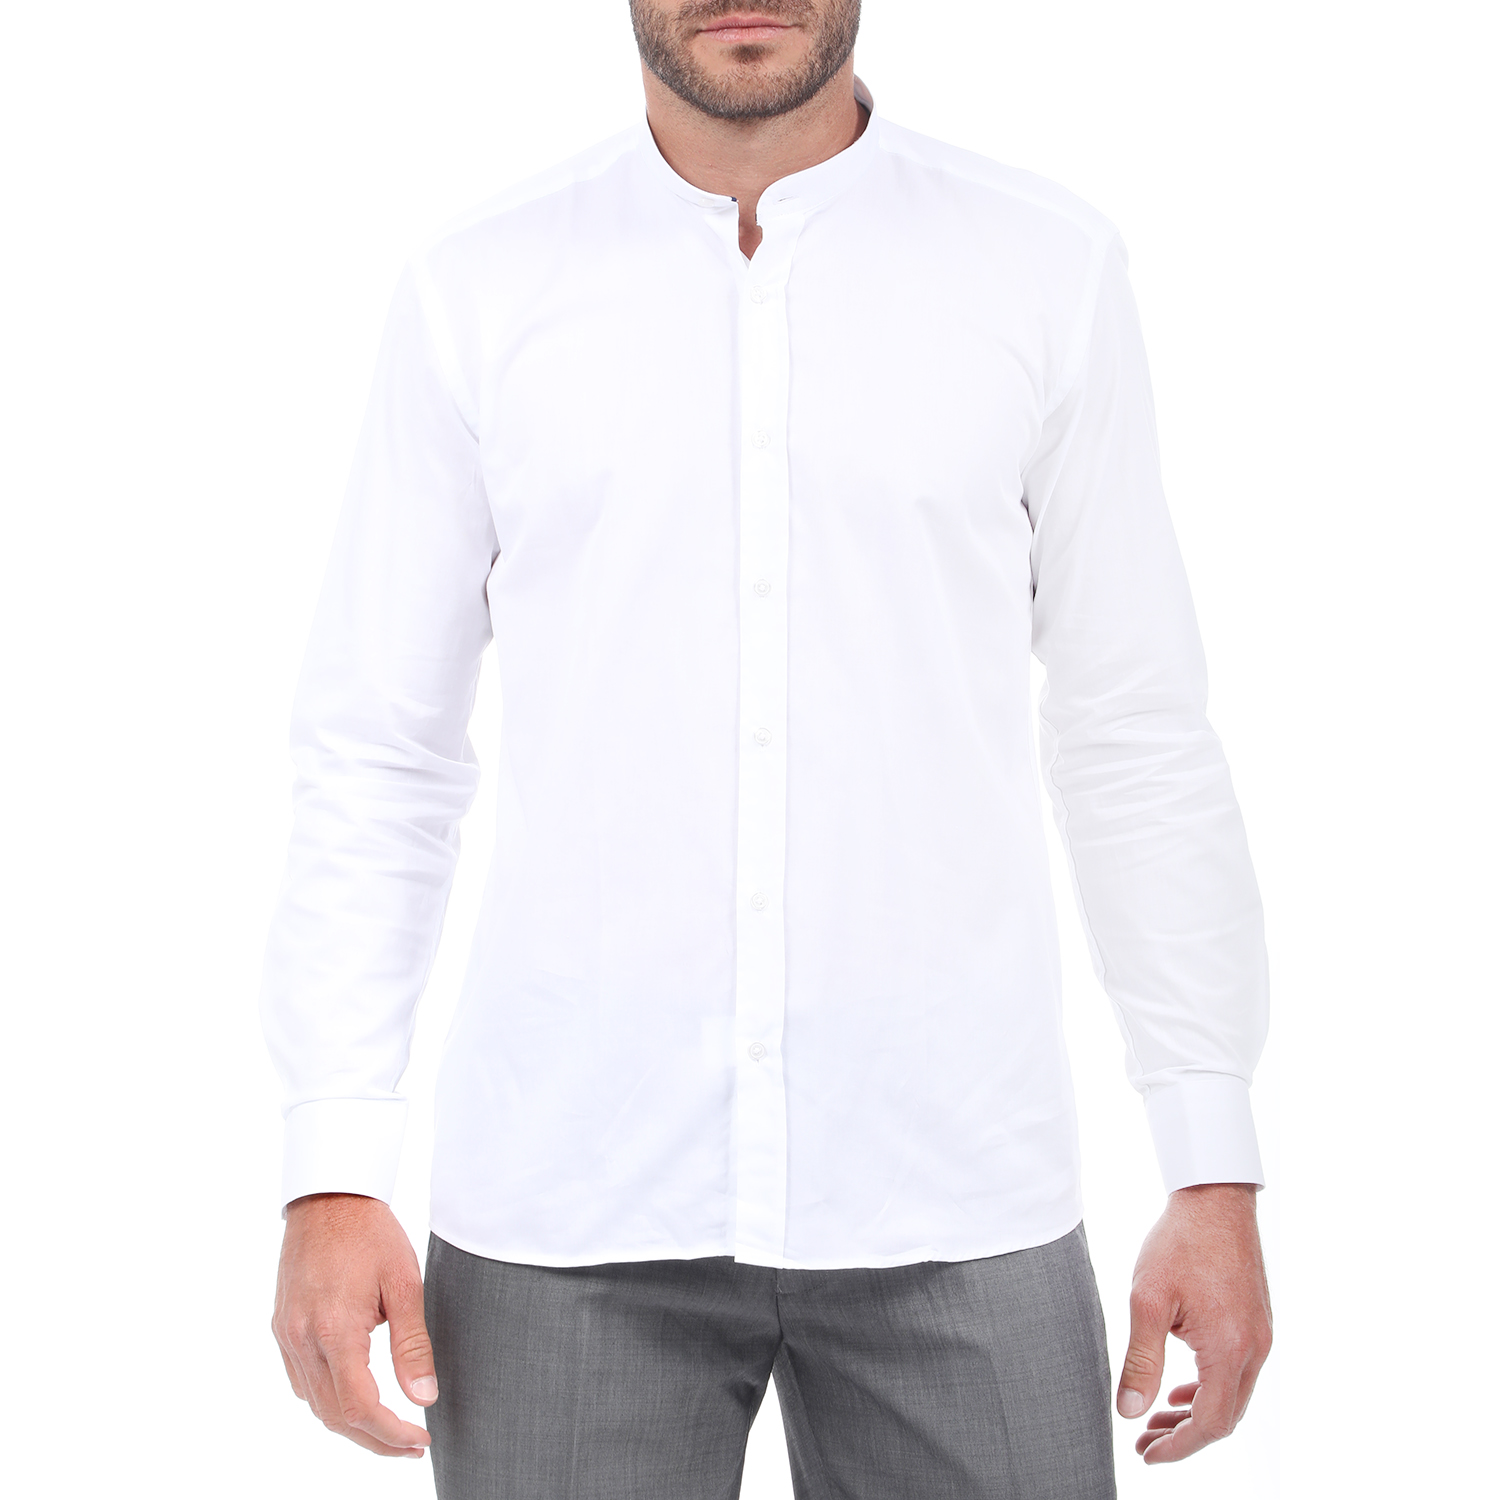 Ανδρικά/Ρούχα/Πουκάμισα/Μακρυμάνικα MARTIN & CO - Ανδρικό πουκάμισο MARTIN & CO SLIM FIT MAO λευκό